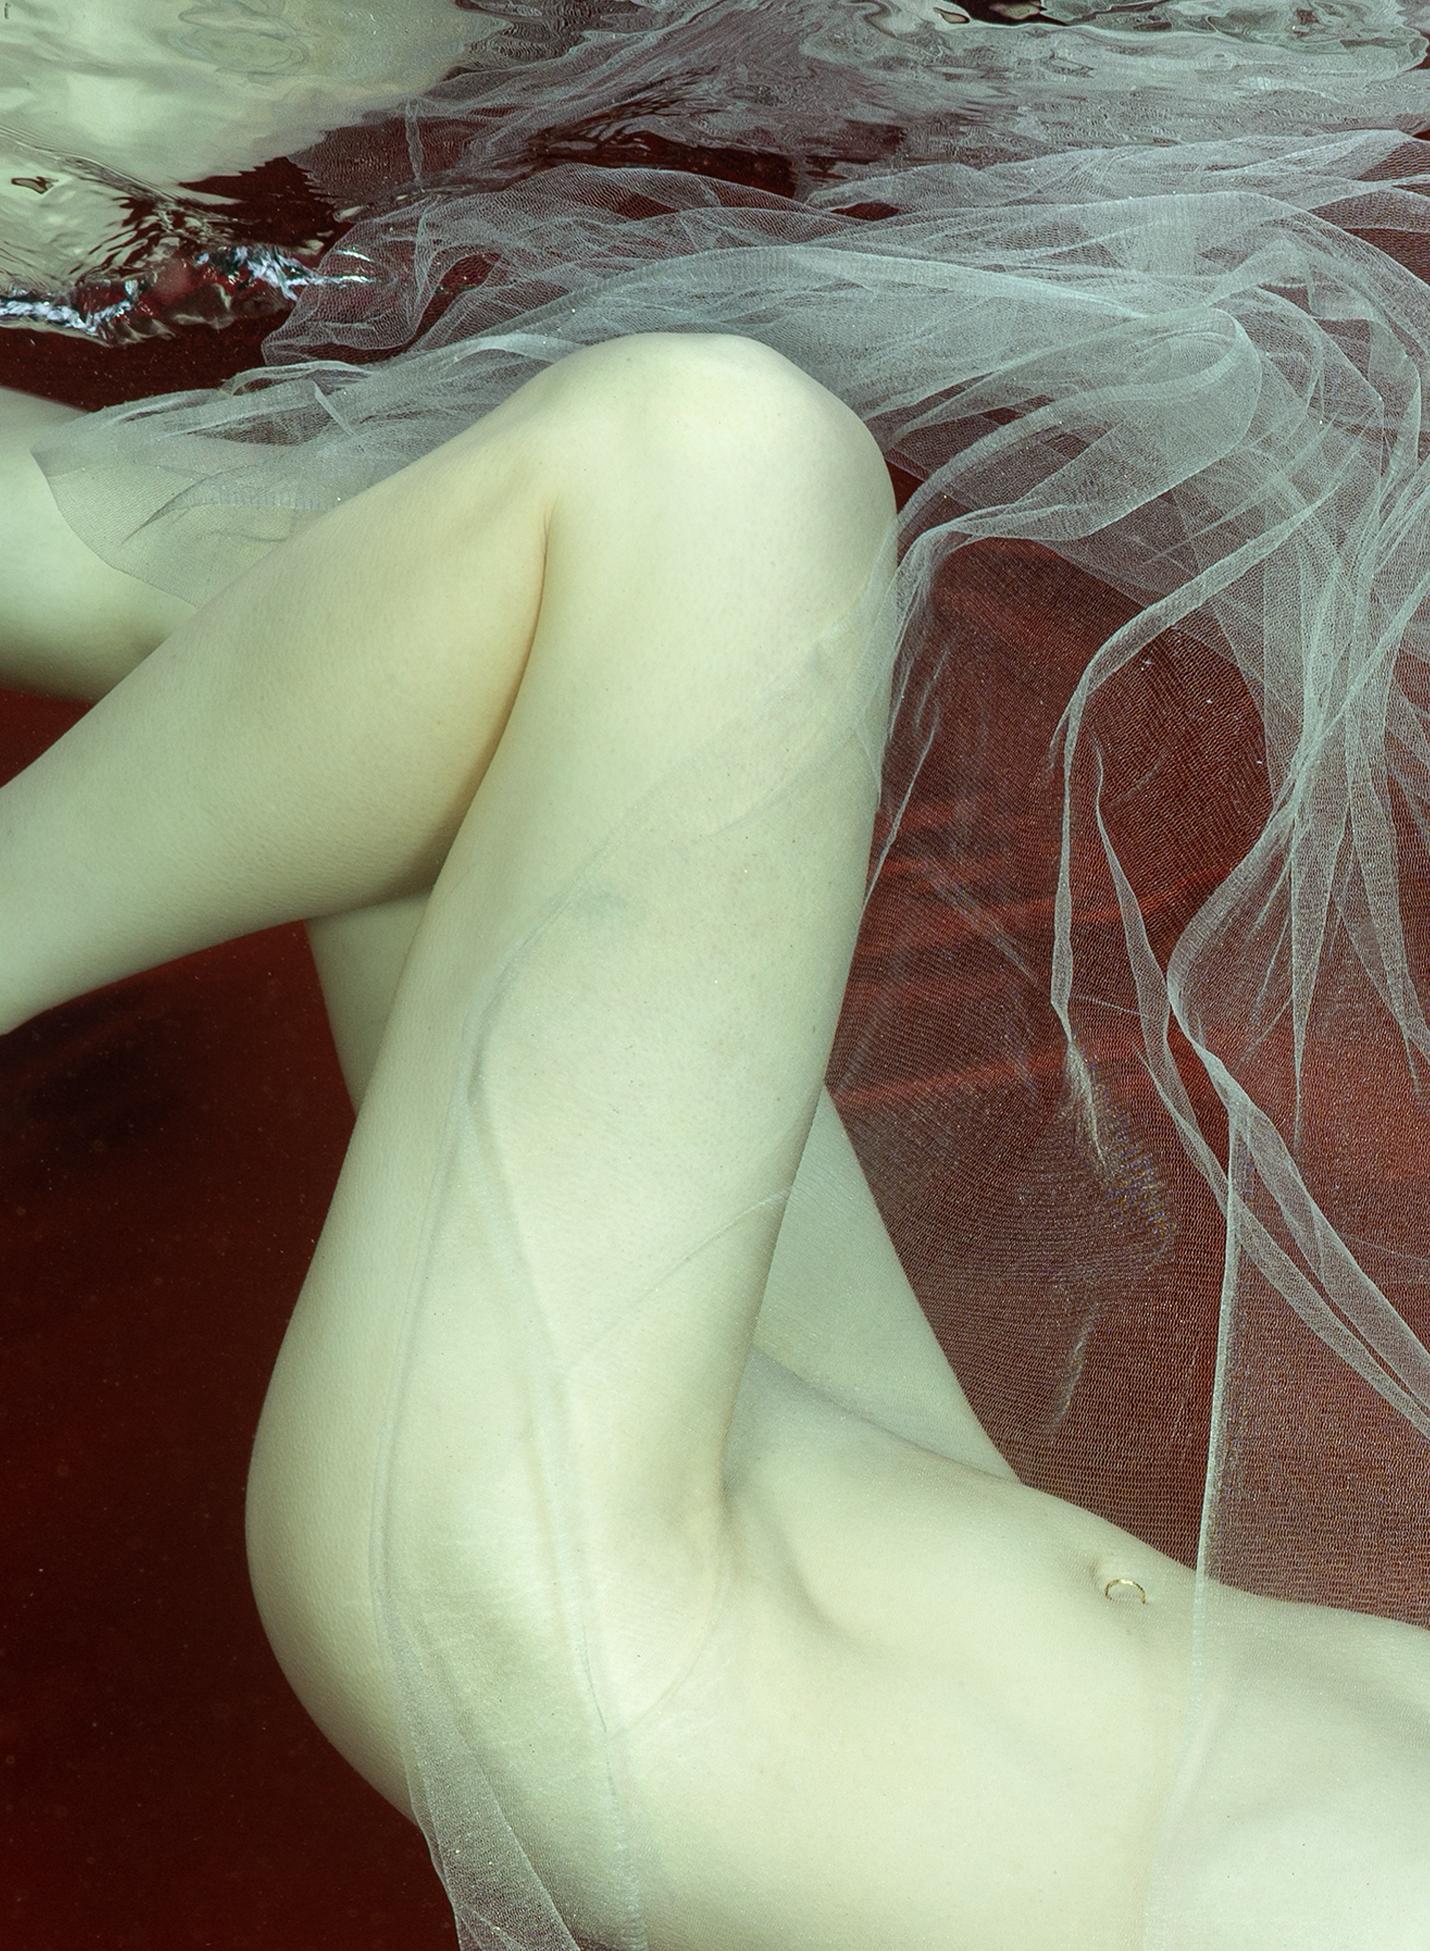 Unterwasser-Nacktfotografie – Archivalischer Pigmentdruck von Loreley (Fotorealismus), Photograph, von Alex Sher